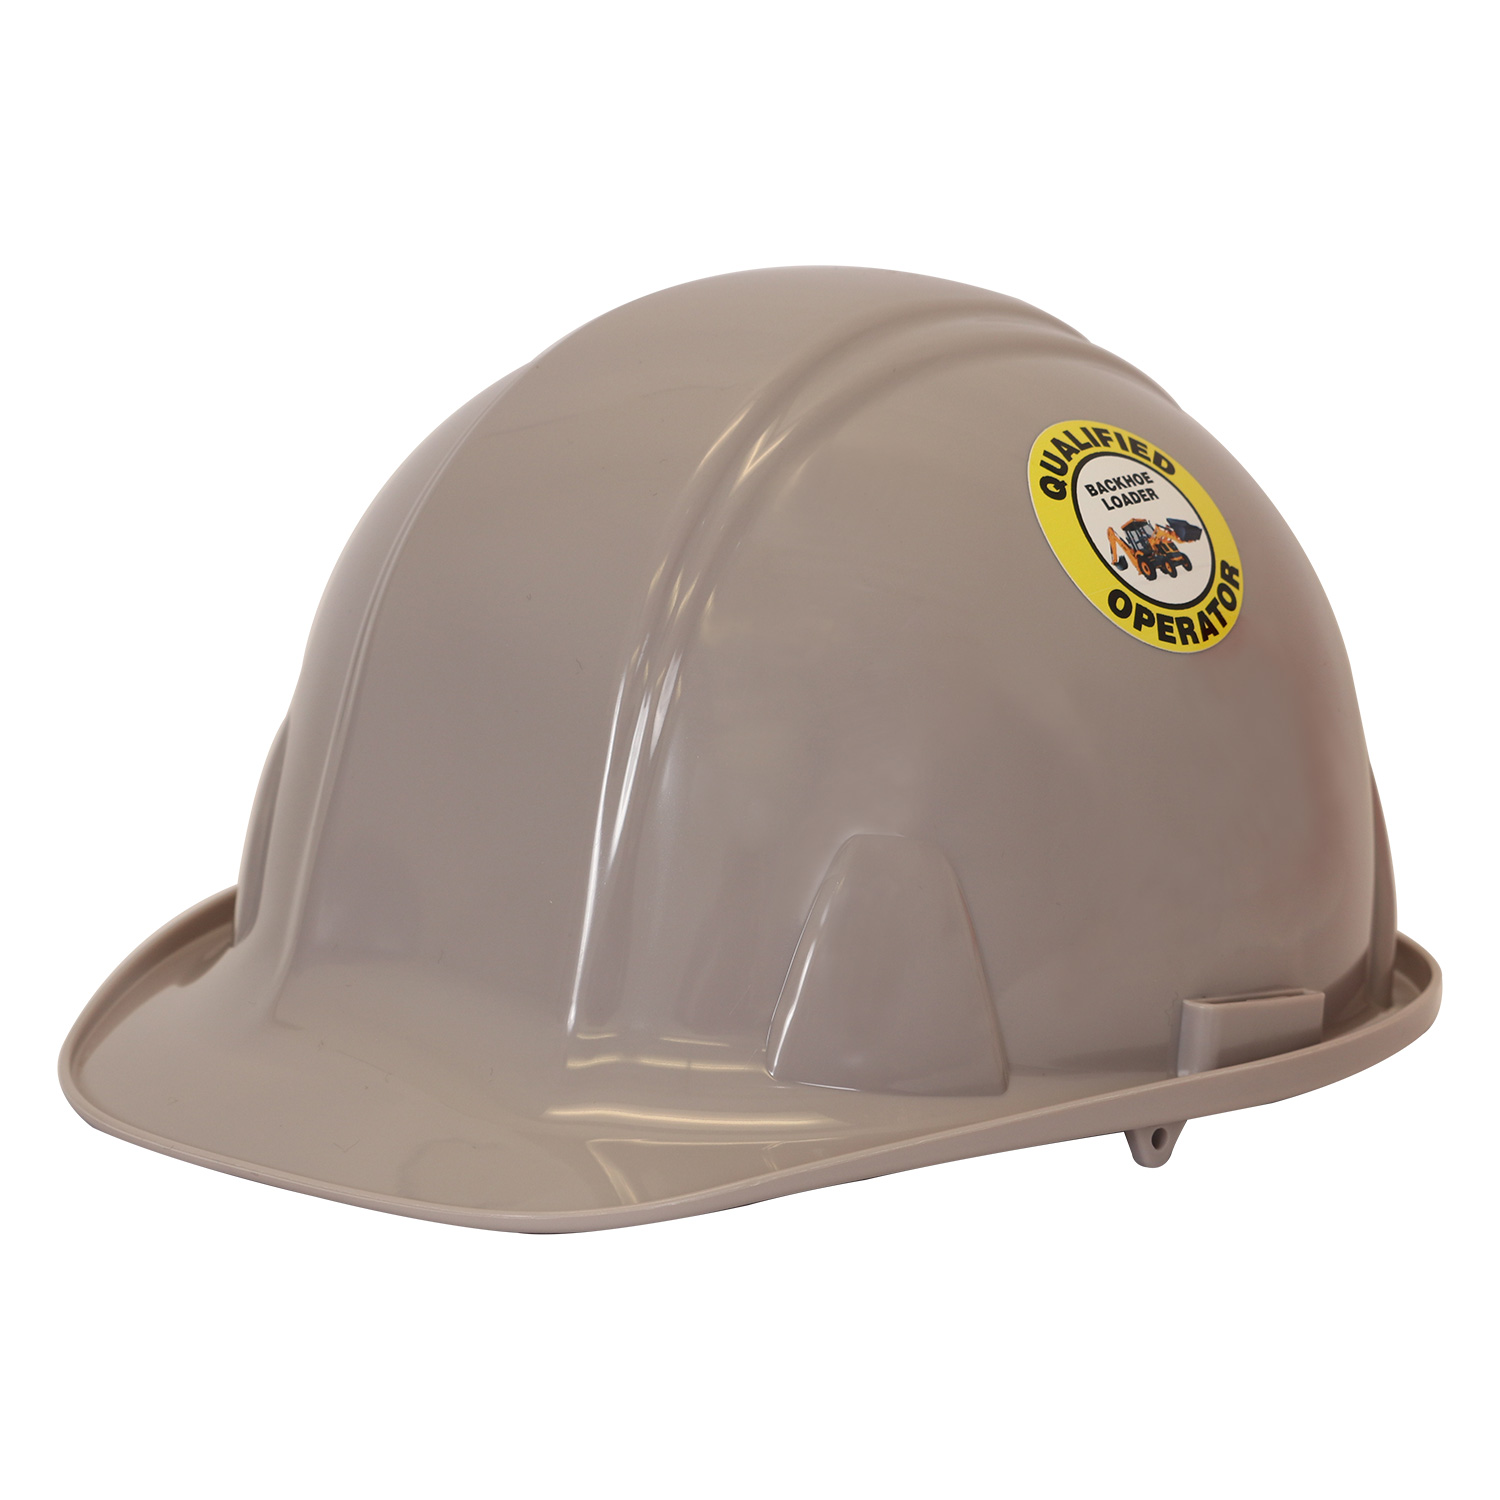 Welder Level 1 Hard Hat Decals Signs, SKU: HH-0475